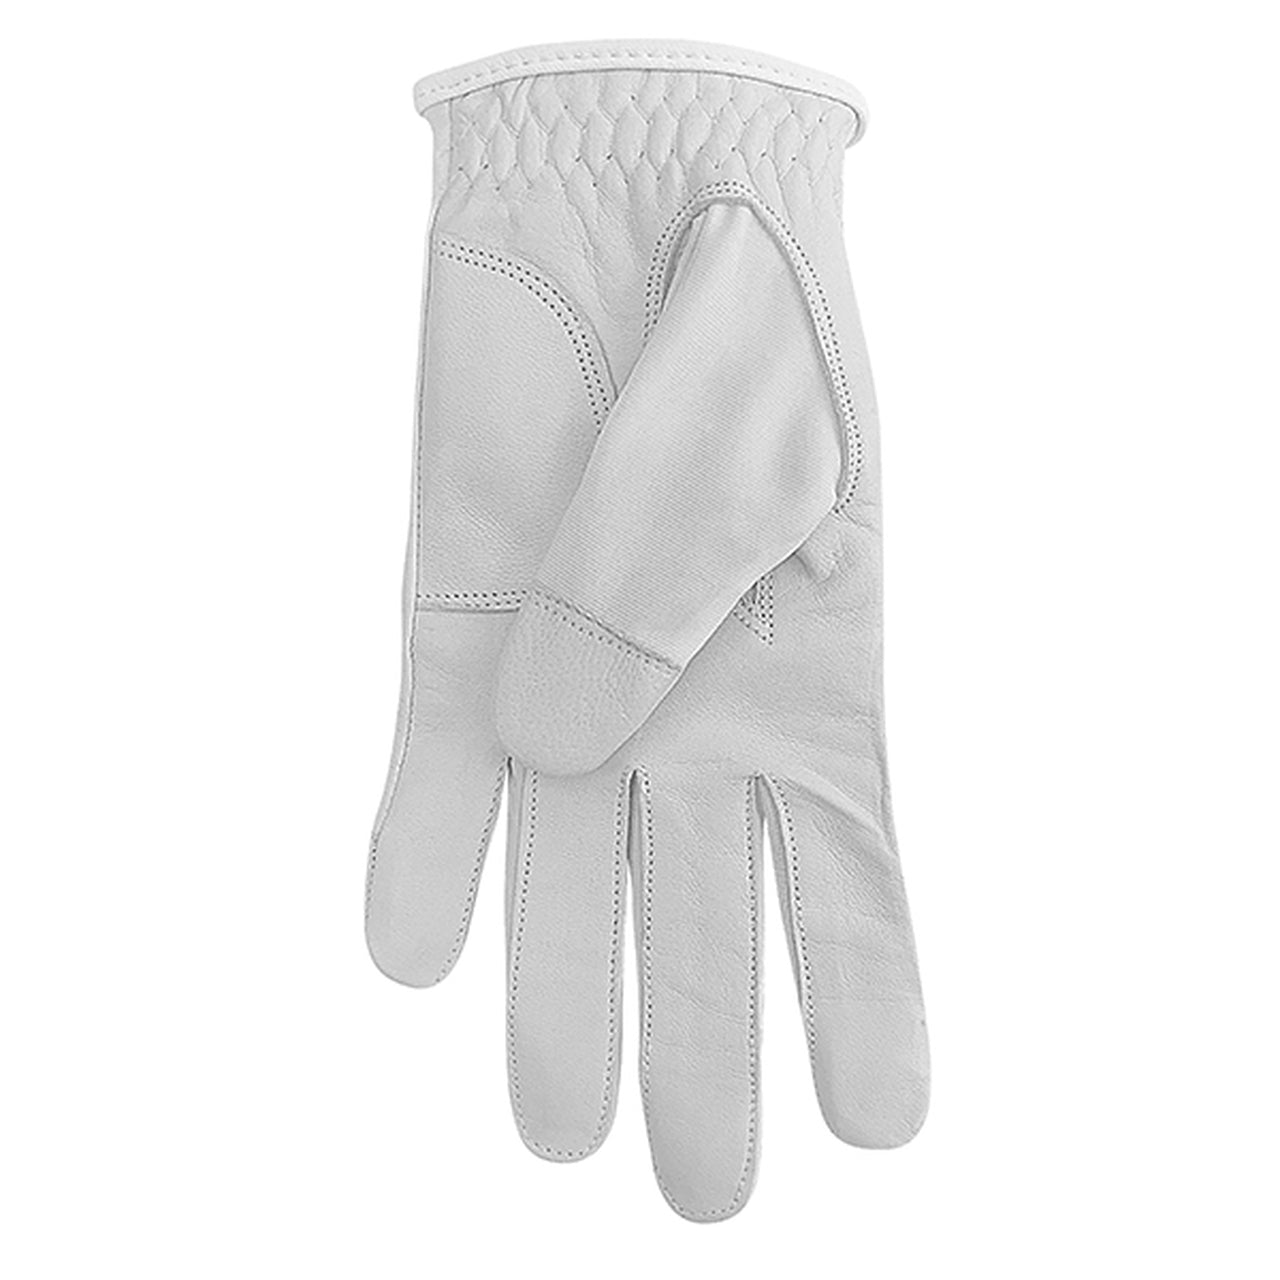 Comfort Stretch Glove with Cabretta Palm